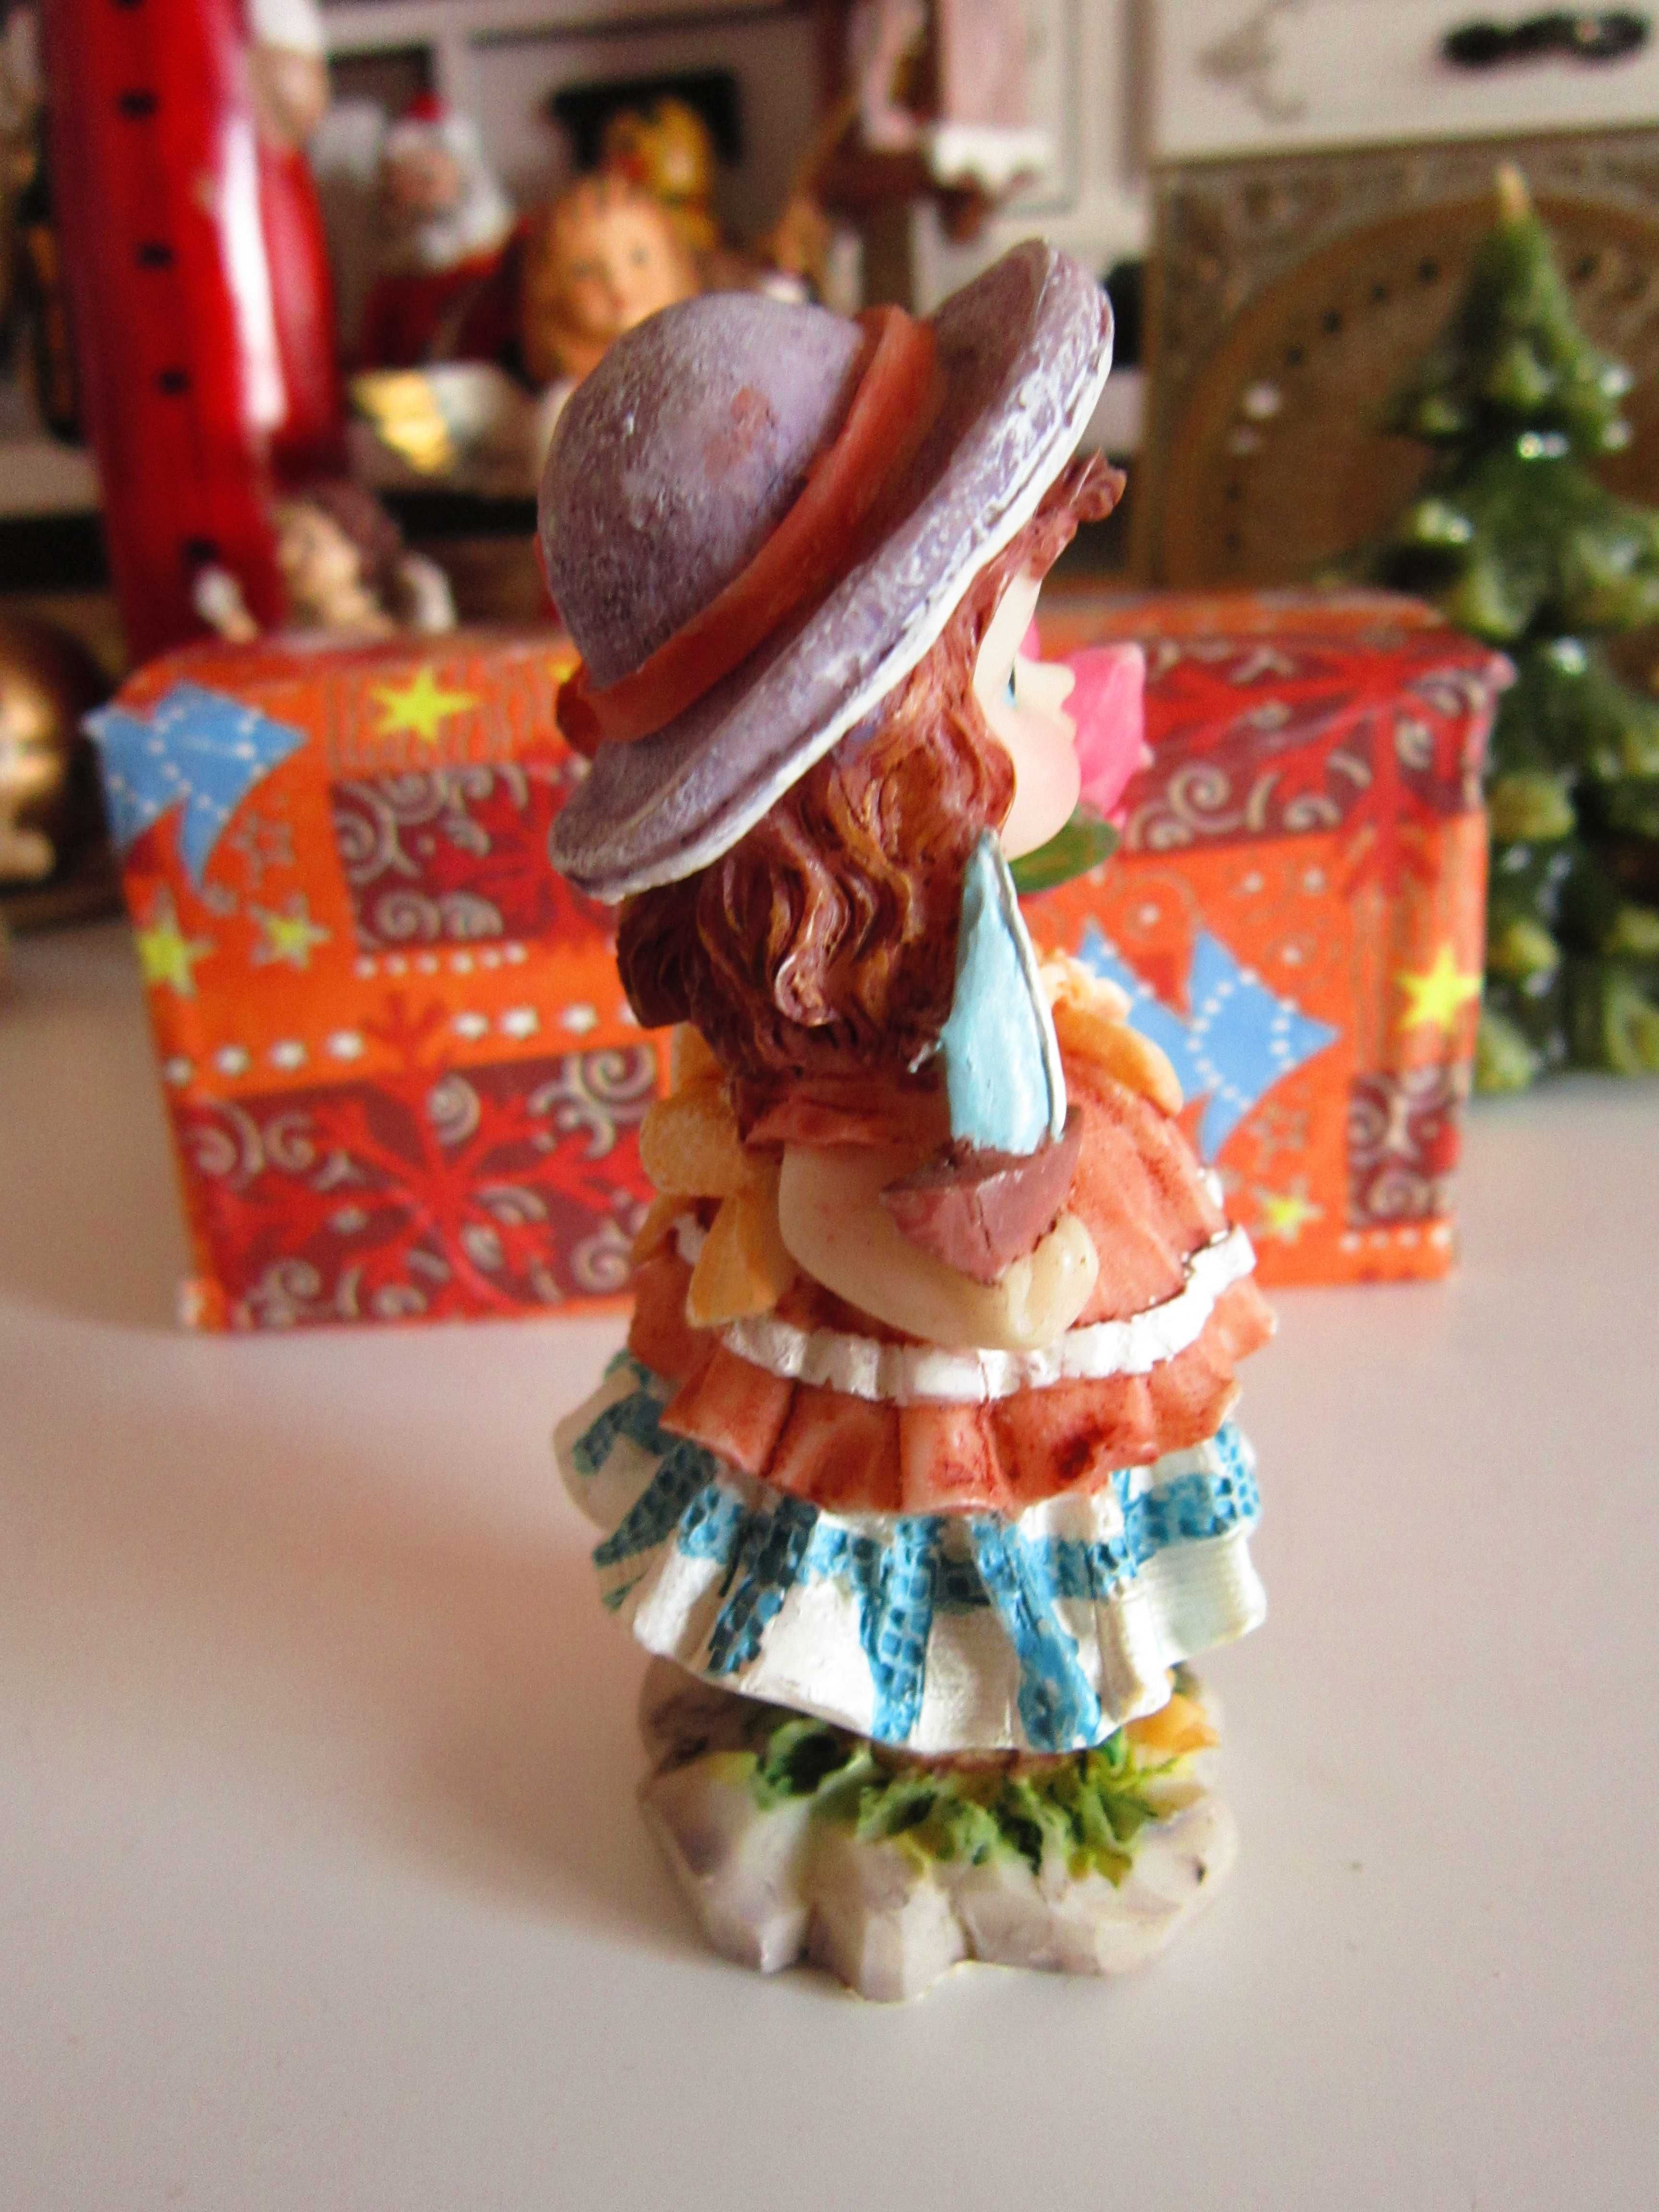 cadou inedit Fetita cu palarie miniatura vintage Germania impecabila